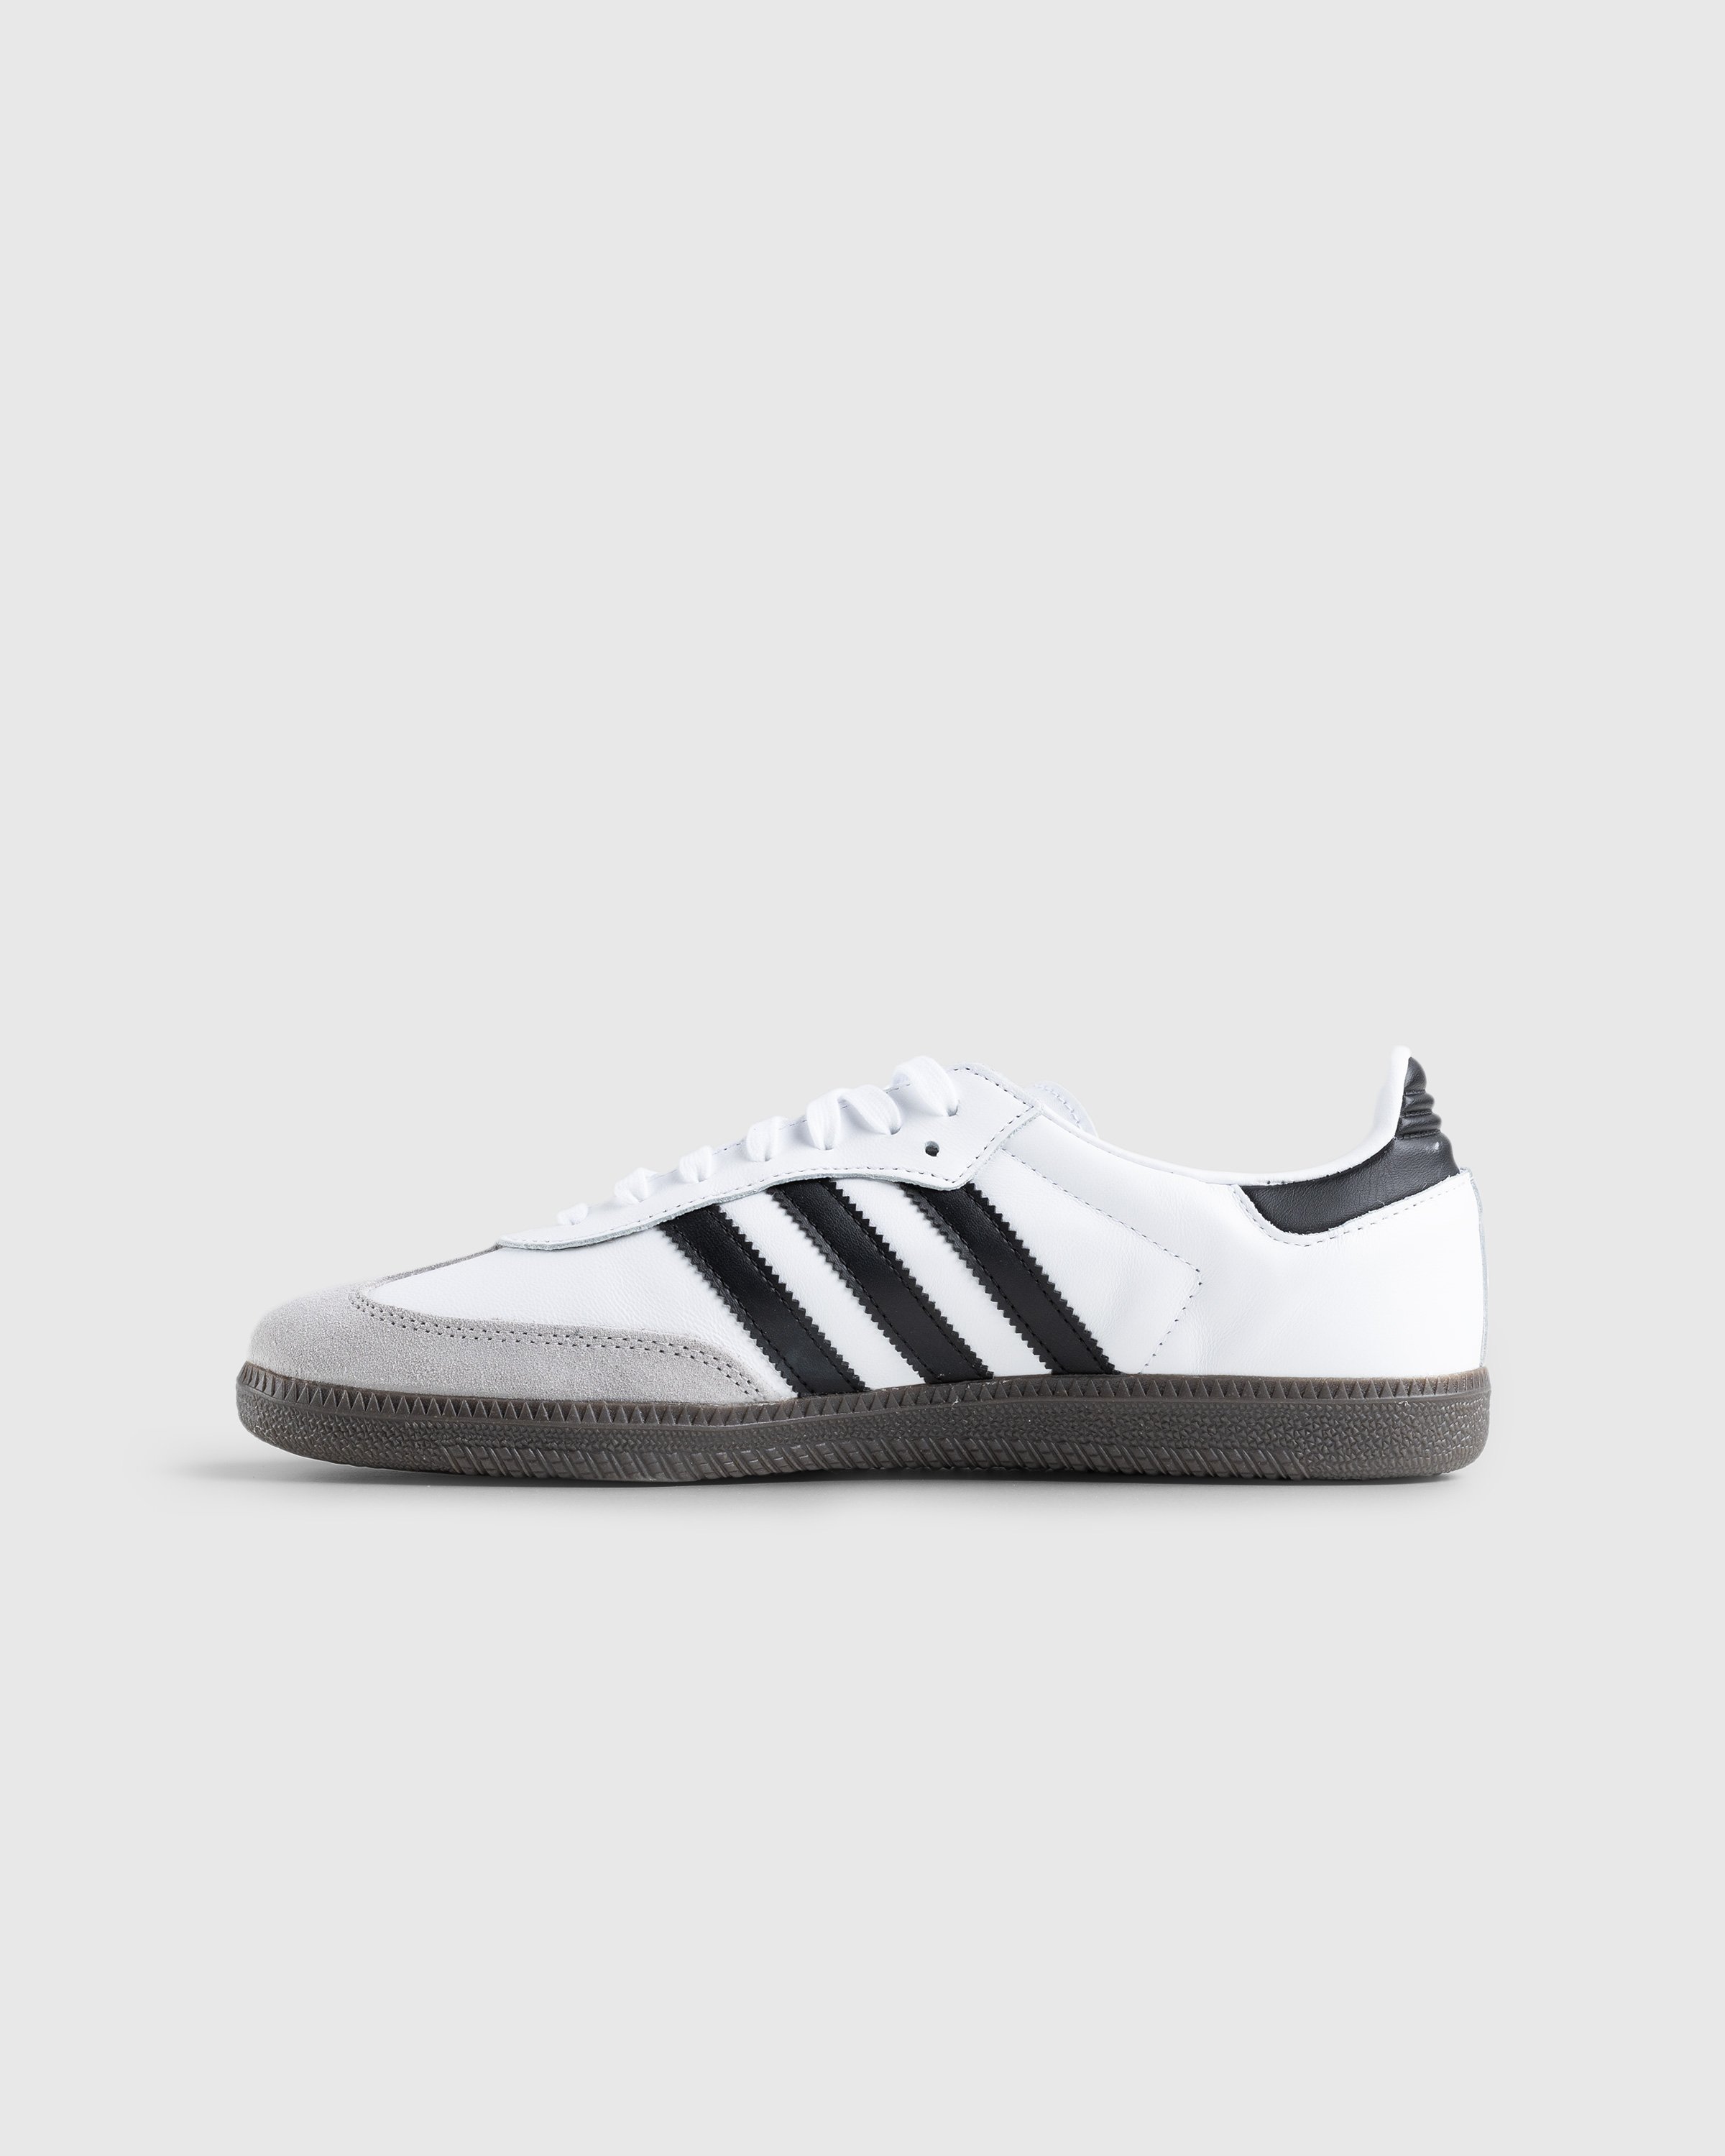 Adidas - Samba OG White - Footwear - White - Image 2